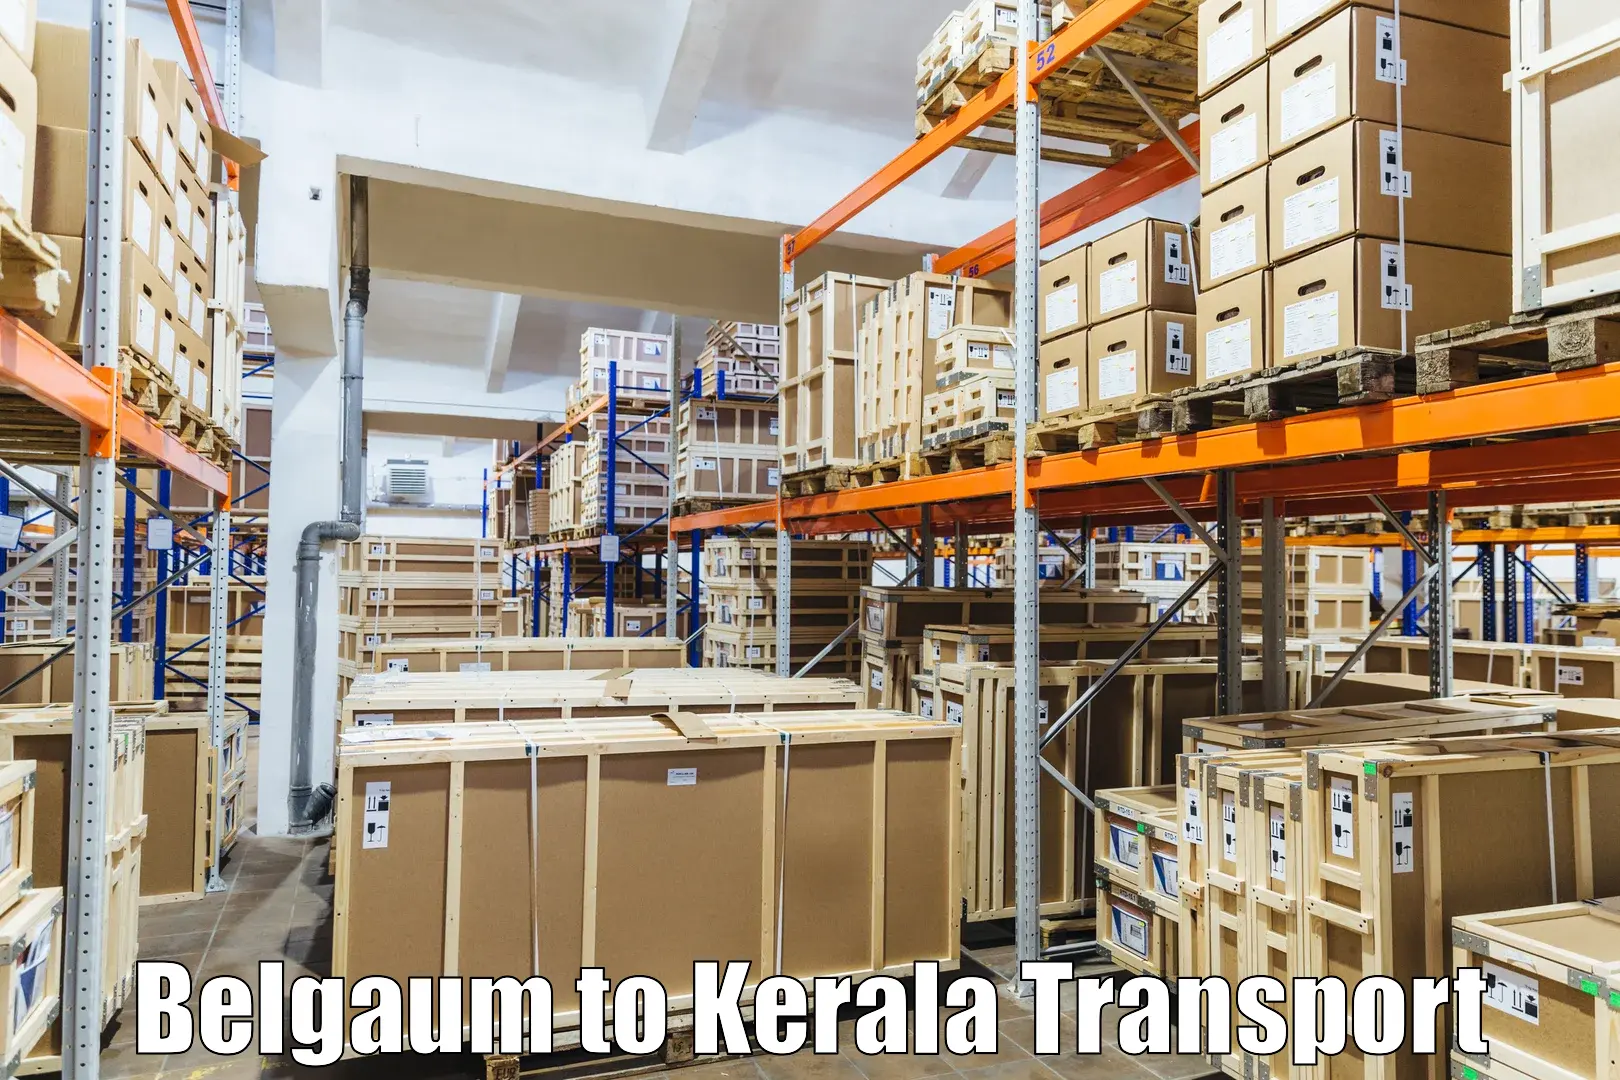 Online transport booking Belgaum to Kakkayam